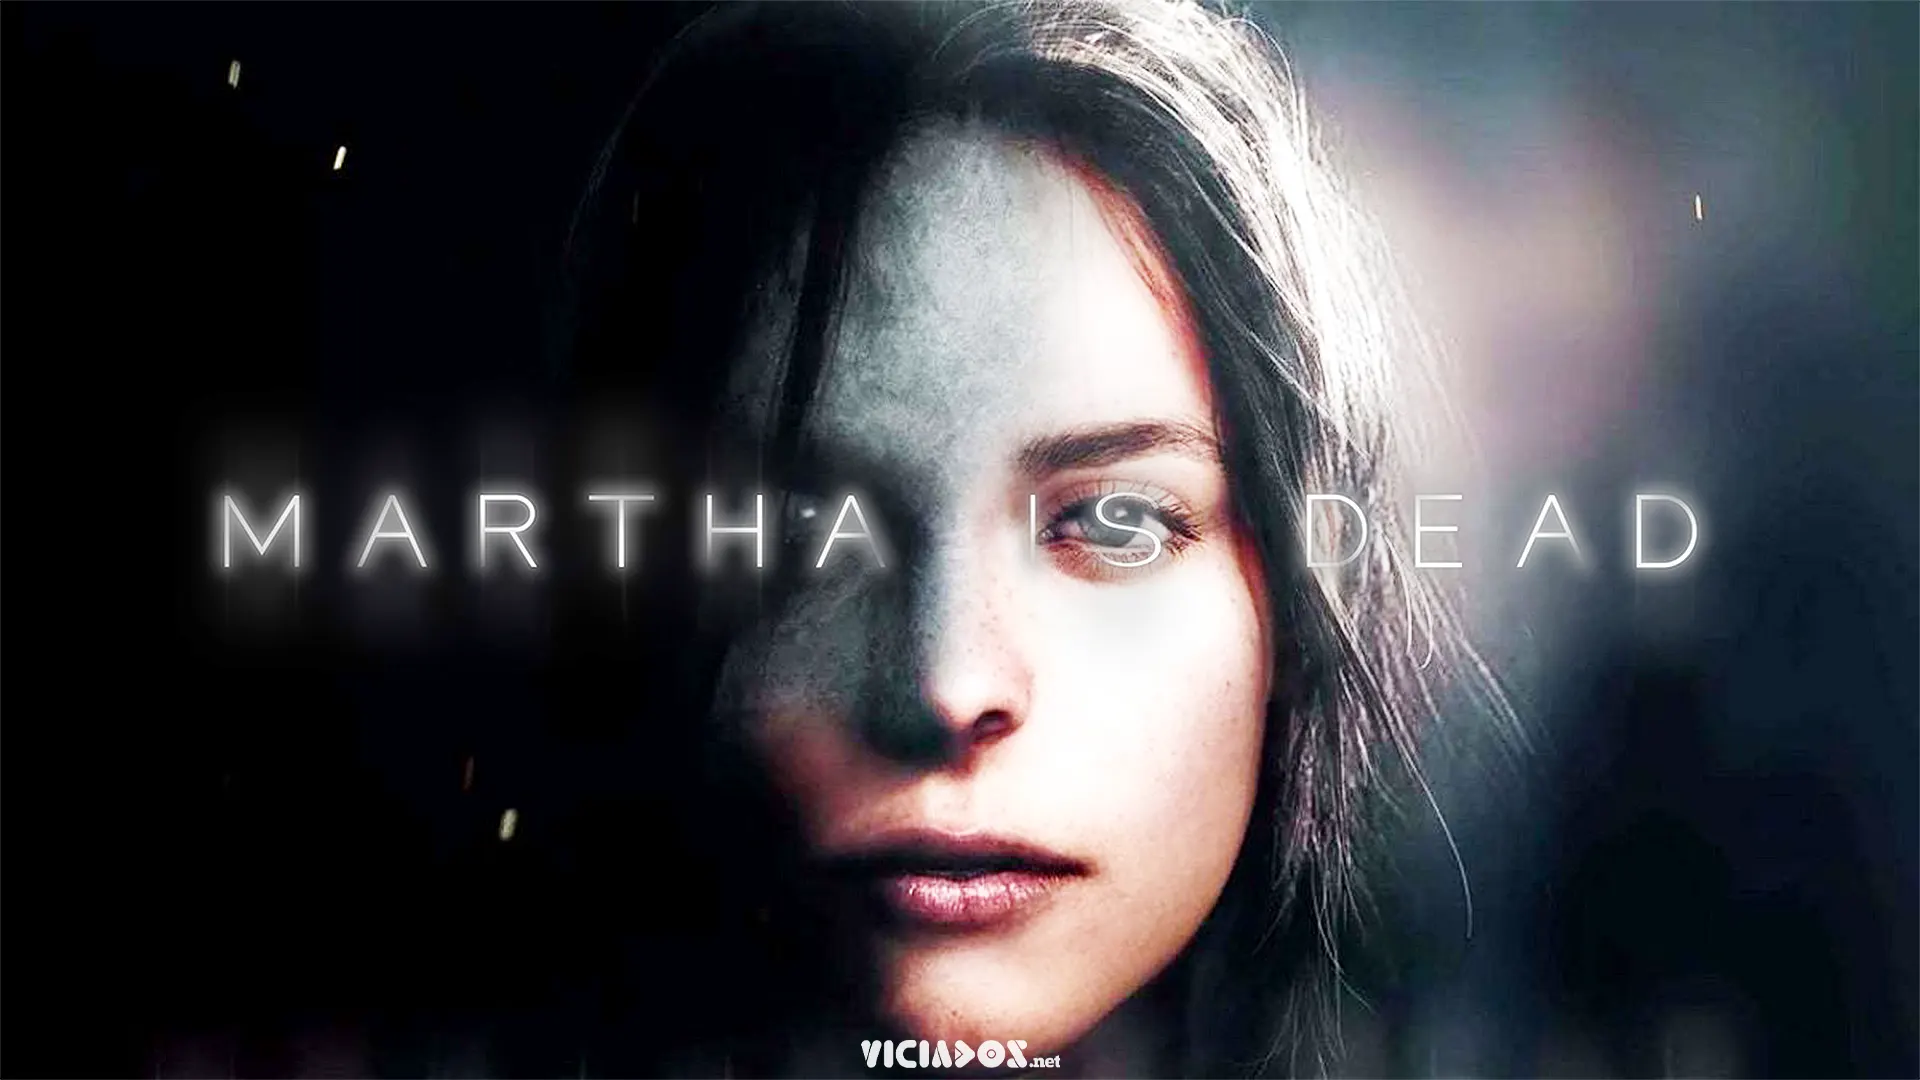 Martha is Dead é destaque nos lançamentos da semana 2